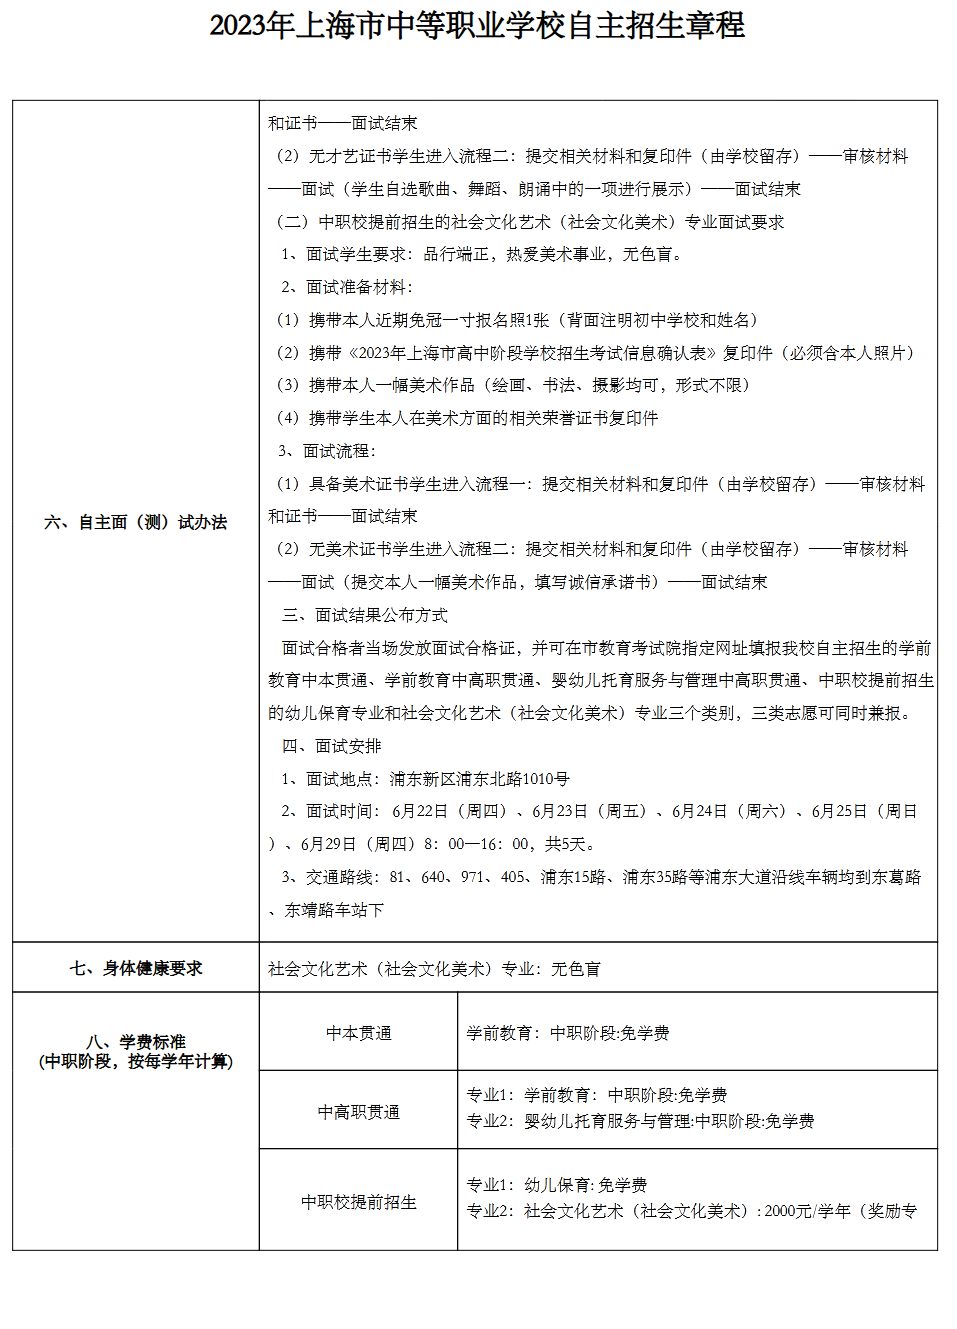 2023年上海新陆职业技术学校中考自主招生计划